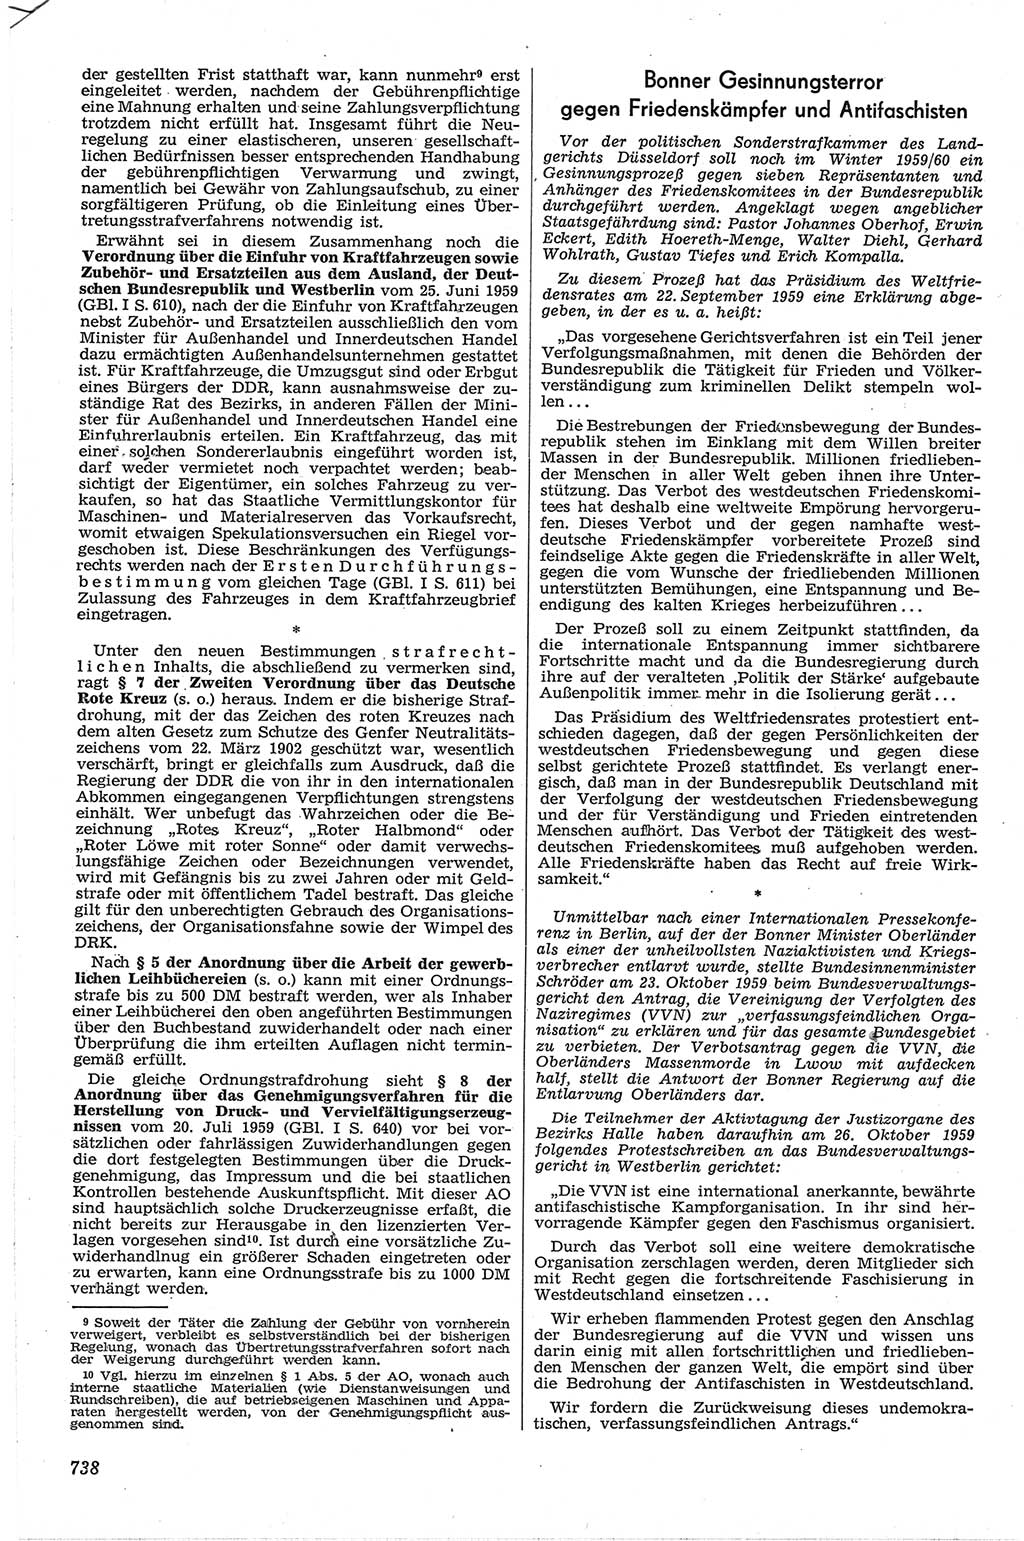 Neue Justiz (NJ), Zeitschrift für Recht und Rechtswissenschaft [Deutsche Demokratische Republik (DDR)], 13. Jahrgang 1959, Seite 738 (NJ DDR 1959, S. 738)